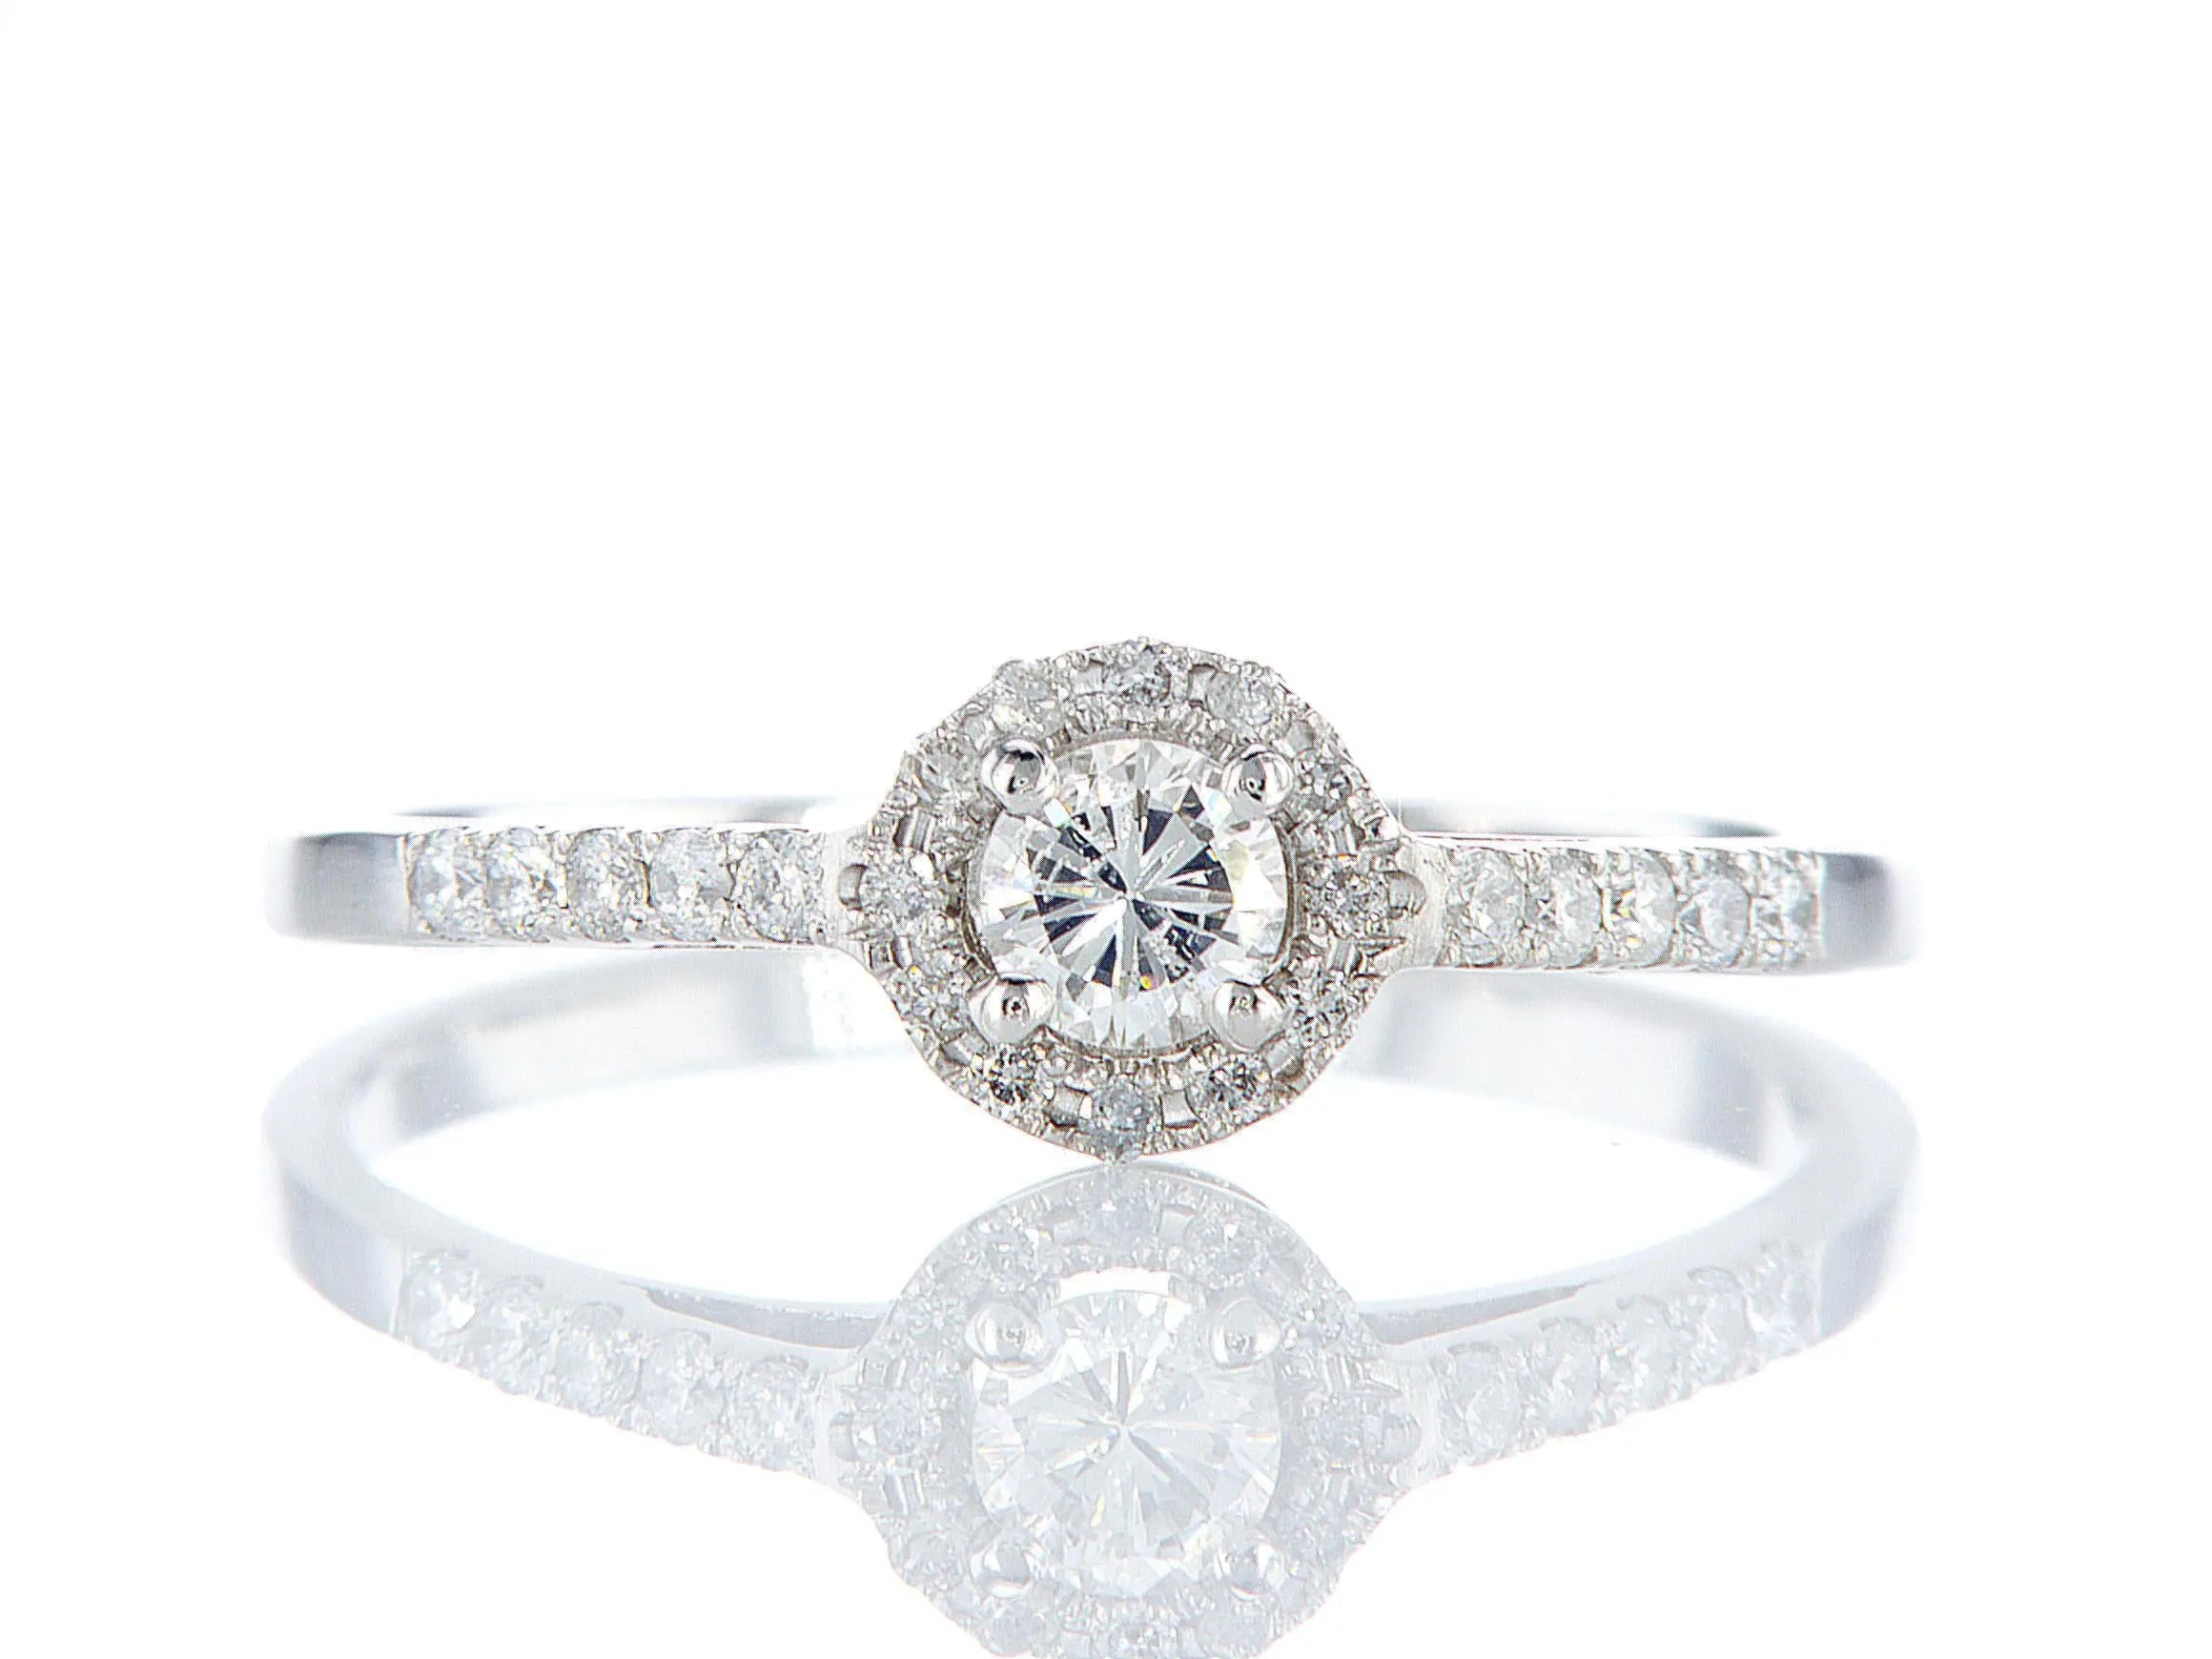 טבעת אירוסין עינב Fermond Jewelery  טבעת אירוסין עם יהלום טבעי מרכזי מוקף ביהלומים-  סה"כ משובצים 0.38 קראט, המכילה 26 יהלומים טבעיים צדדיים במשקל של 0.18 קראט, יהלום מרכזי של 0.2 קראט. זהב לבן. הטבעת הזו משלבת את היוקרה והברק של טבעת יהלומים עם האלגנטיות הנצחית, ומציעה יופי ואופנה שמתאימים לכל אירוע.